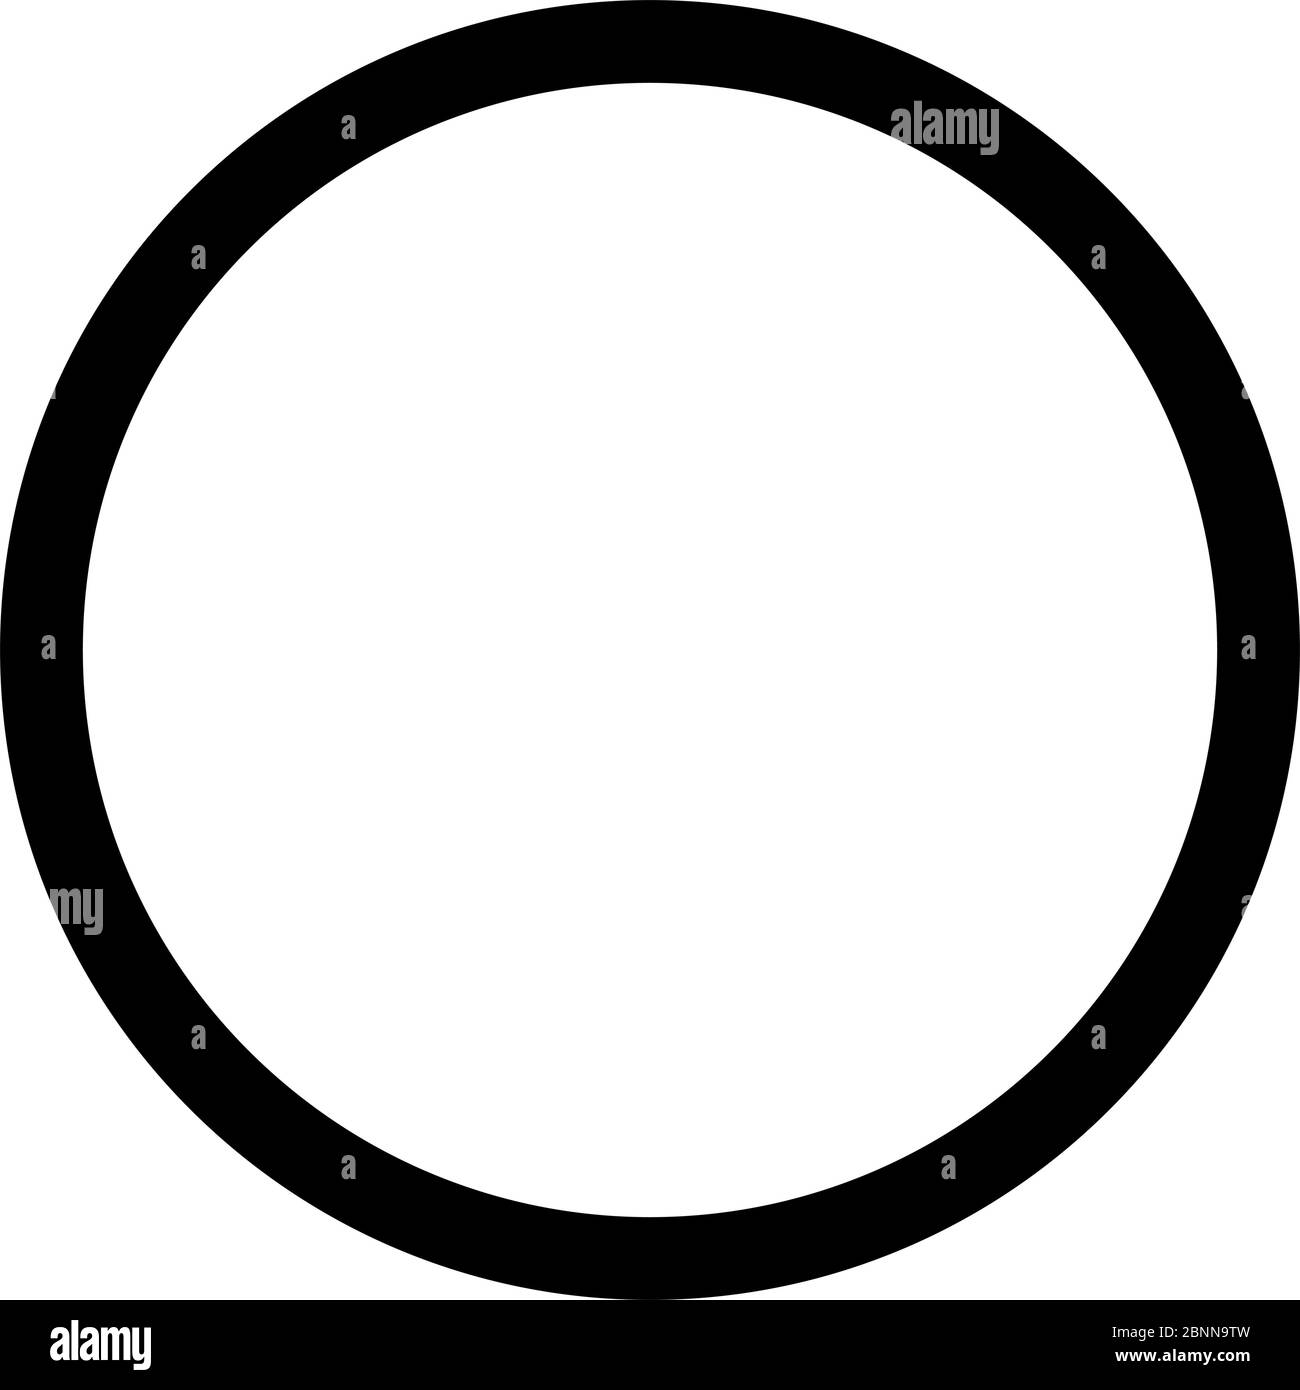 Ilustración de vector de entrada o permitida. Fondo de círculo negro. Símbolos de tráfico. Ilustración del Vector